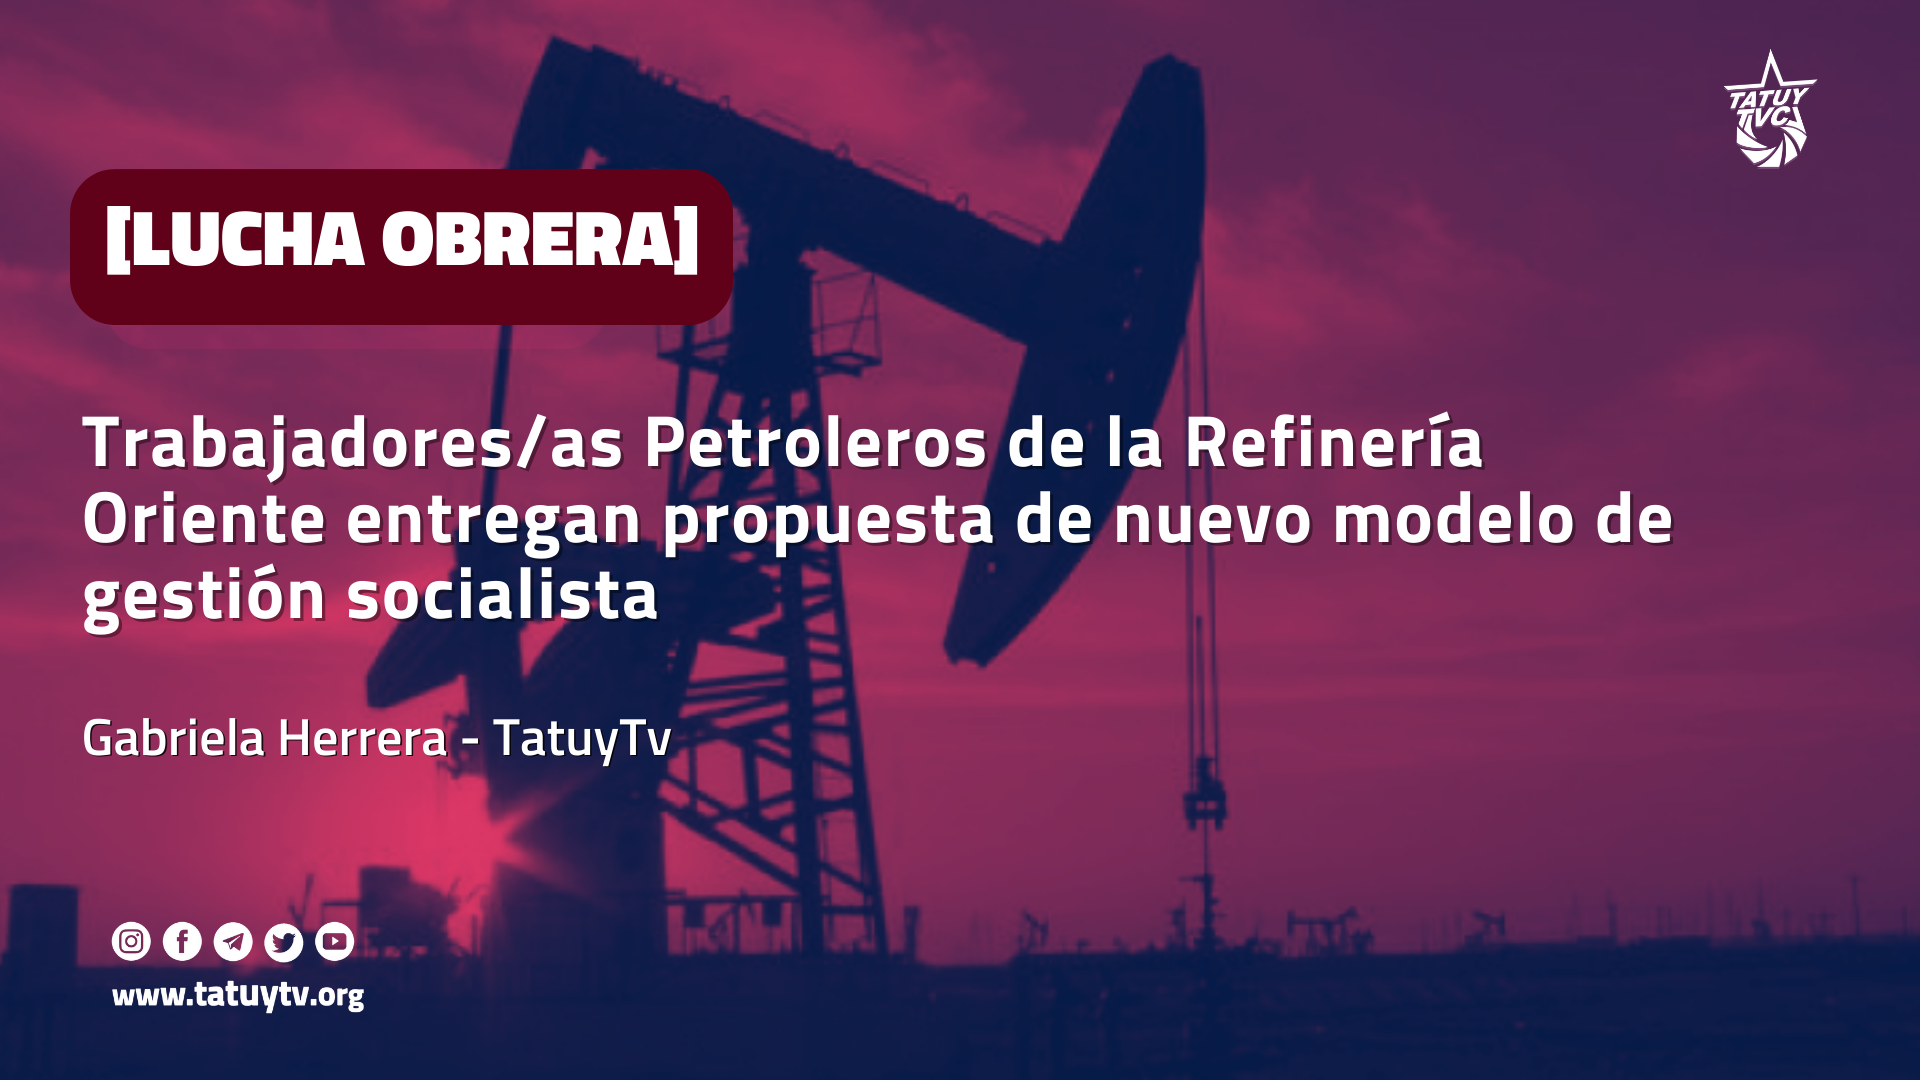 [LUCHA OBRERA] Trabajadores/as Petroleros de la Refinería Oriente entregan propuesta de nuevo modelo de gestión socialista